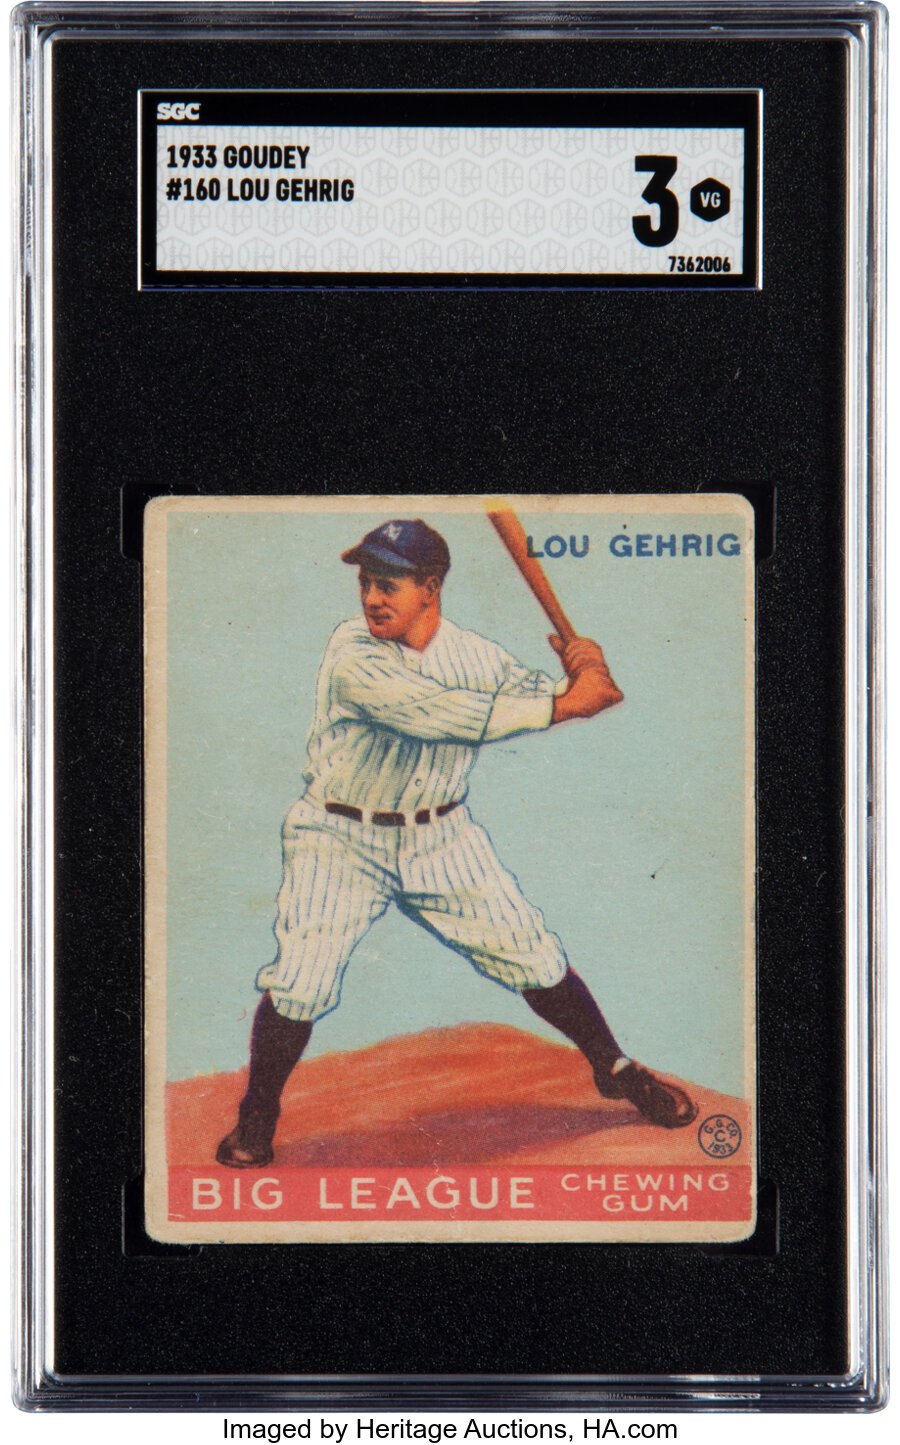 1933 Goudey Lou Gehrig Rookie #160 SGC VG 3